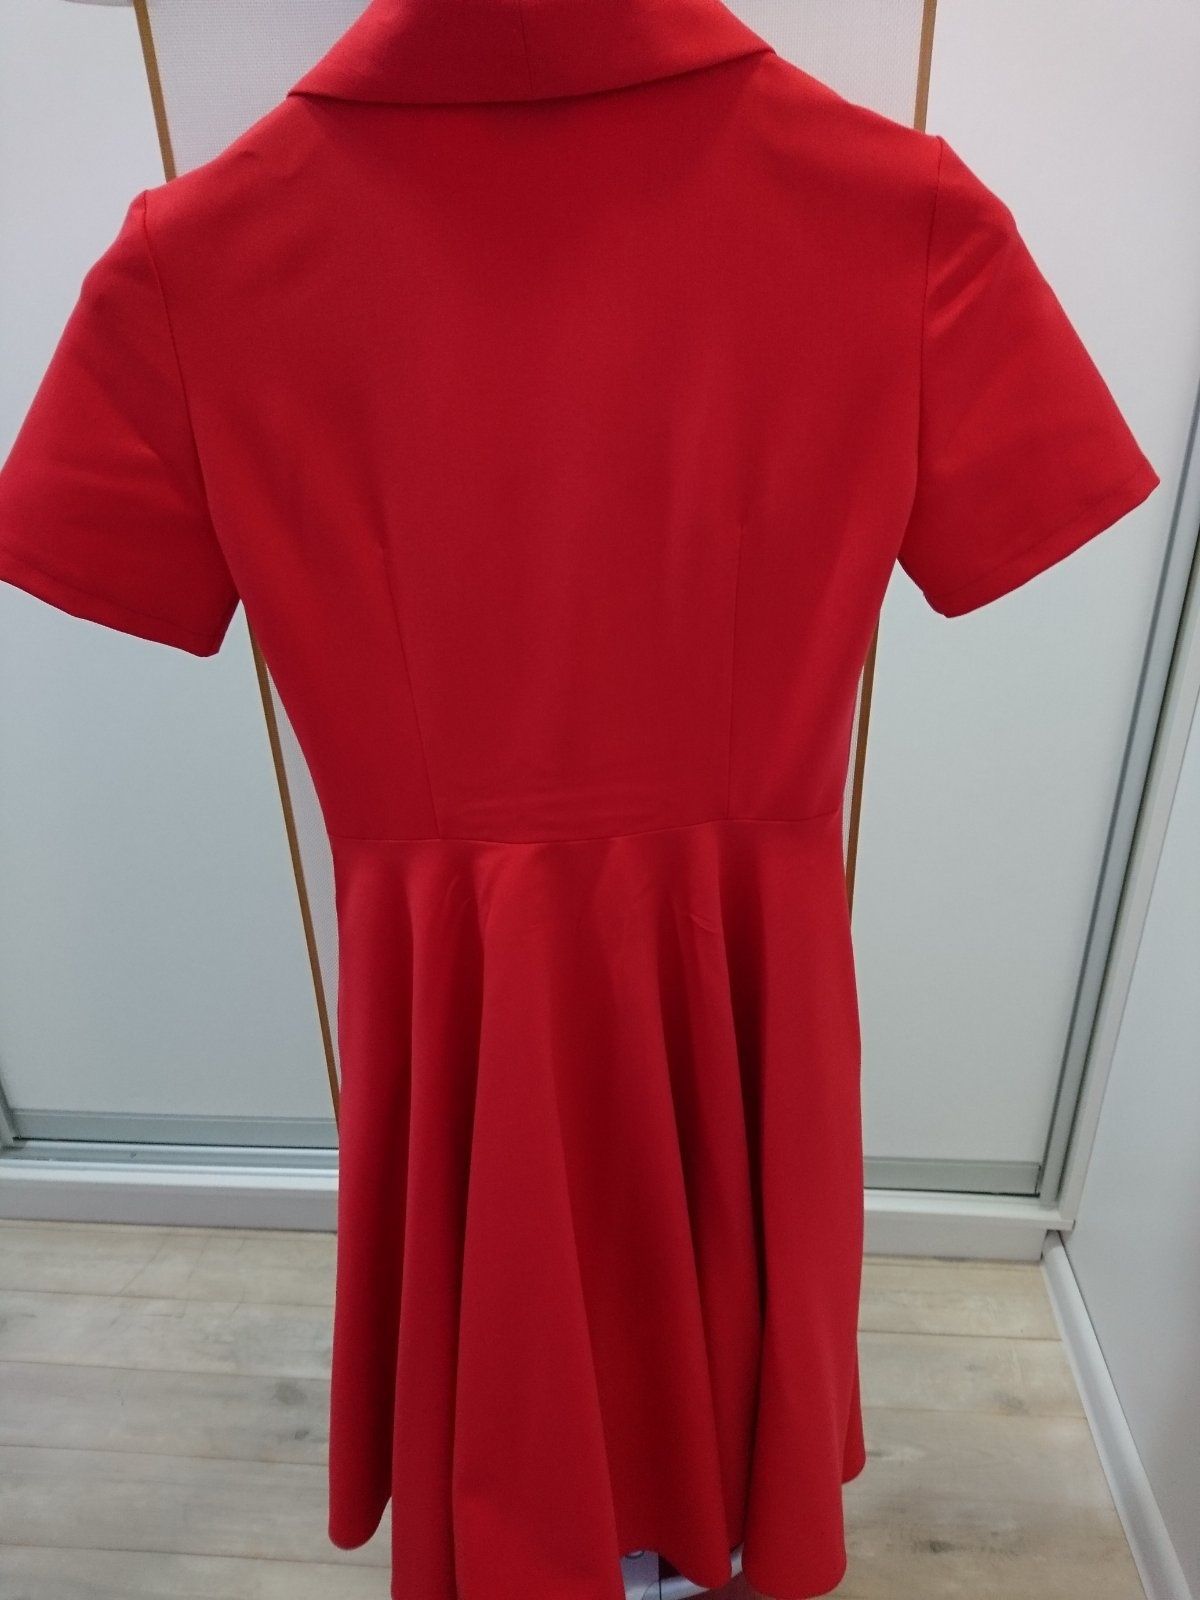 Распродажа гардероба! Красное платье Mario Conti / в горох/ пальто